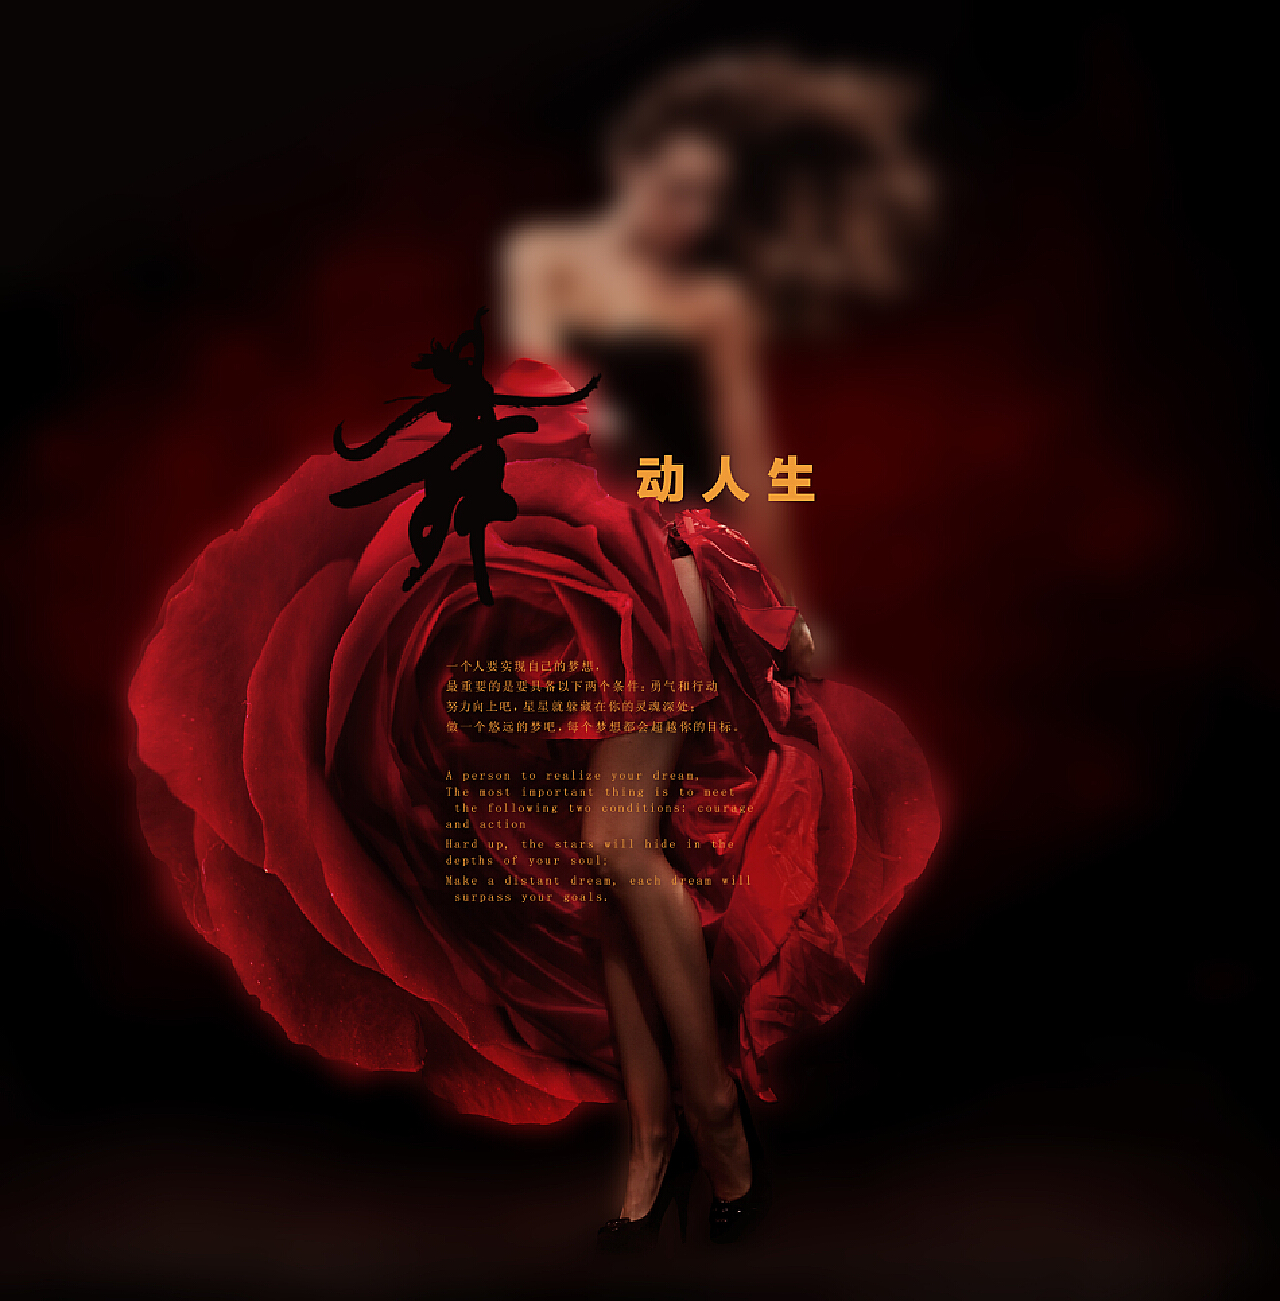 Irene Red Velvet Power Up - 1080x1920 Wallpaper - teahub.io